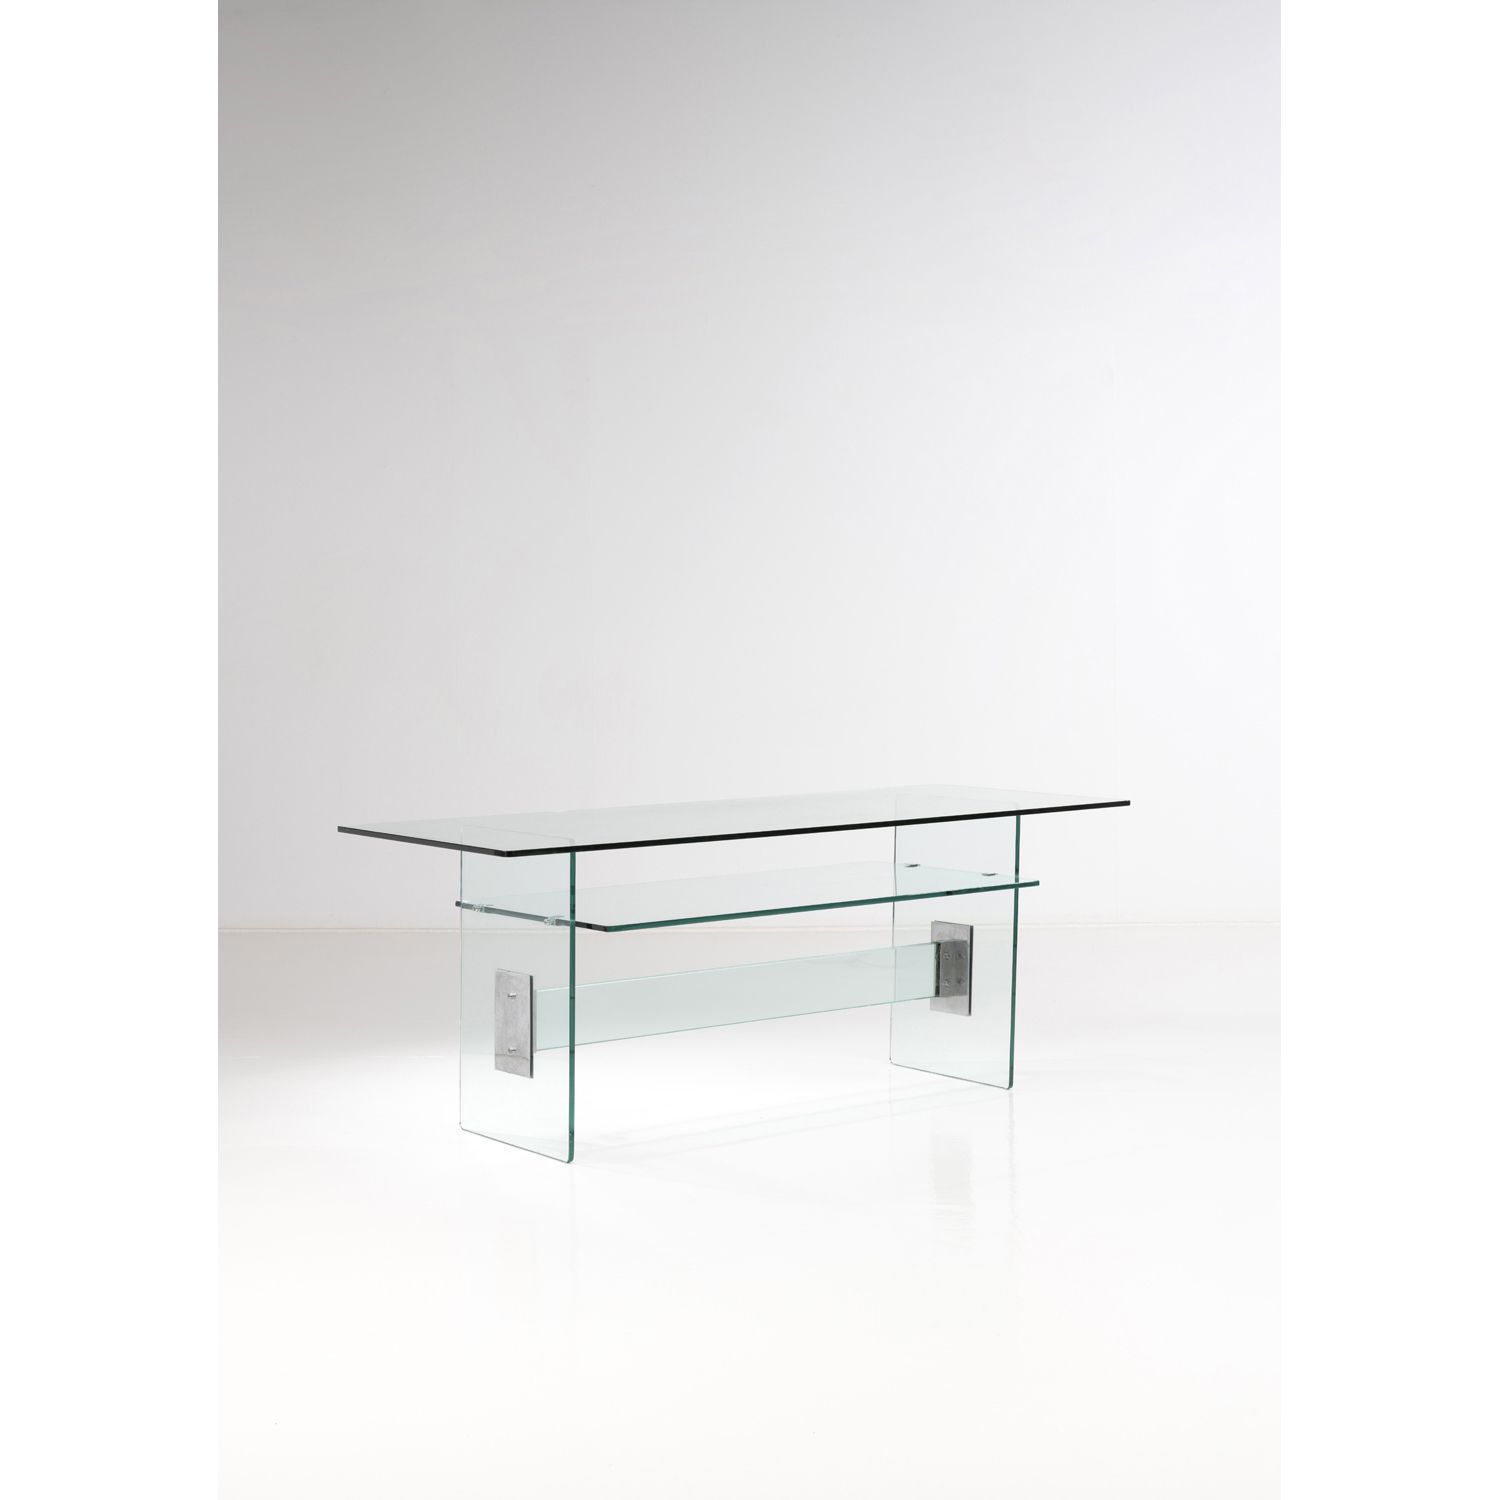 Null Fontana Arte (20.), zugeschrieben

Tabelle

Glas und verchromtes Metall

Um&hellip;